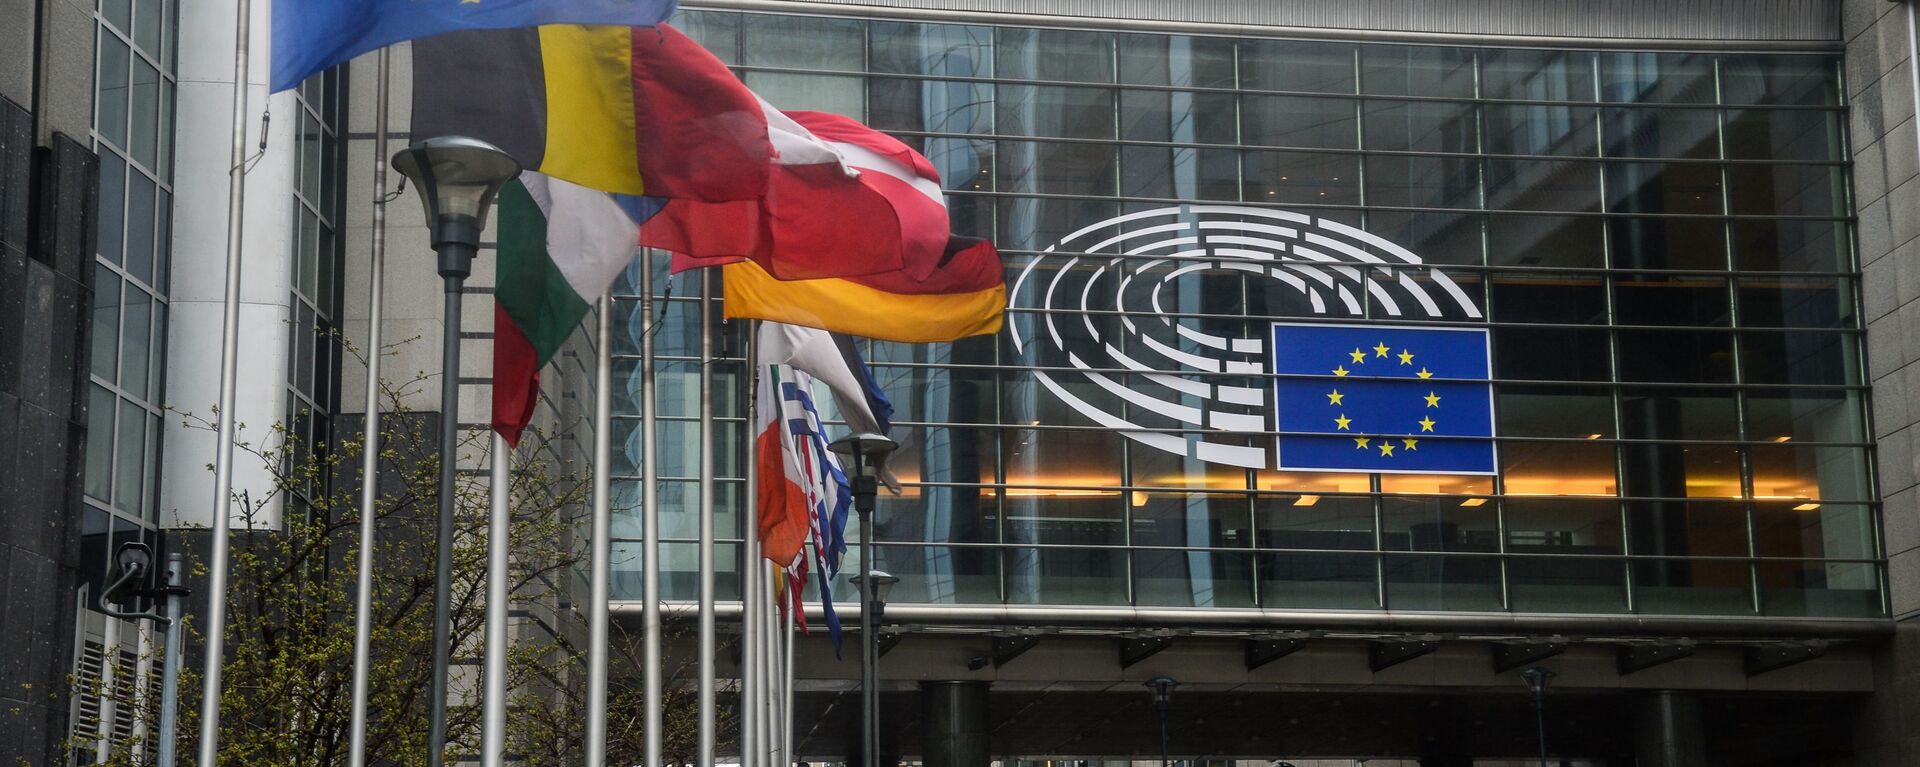 Sede del Parlamento Europeo en Estrasburgo - Sputnik Mundo, 1920, 15.07.2021